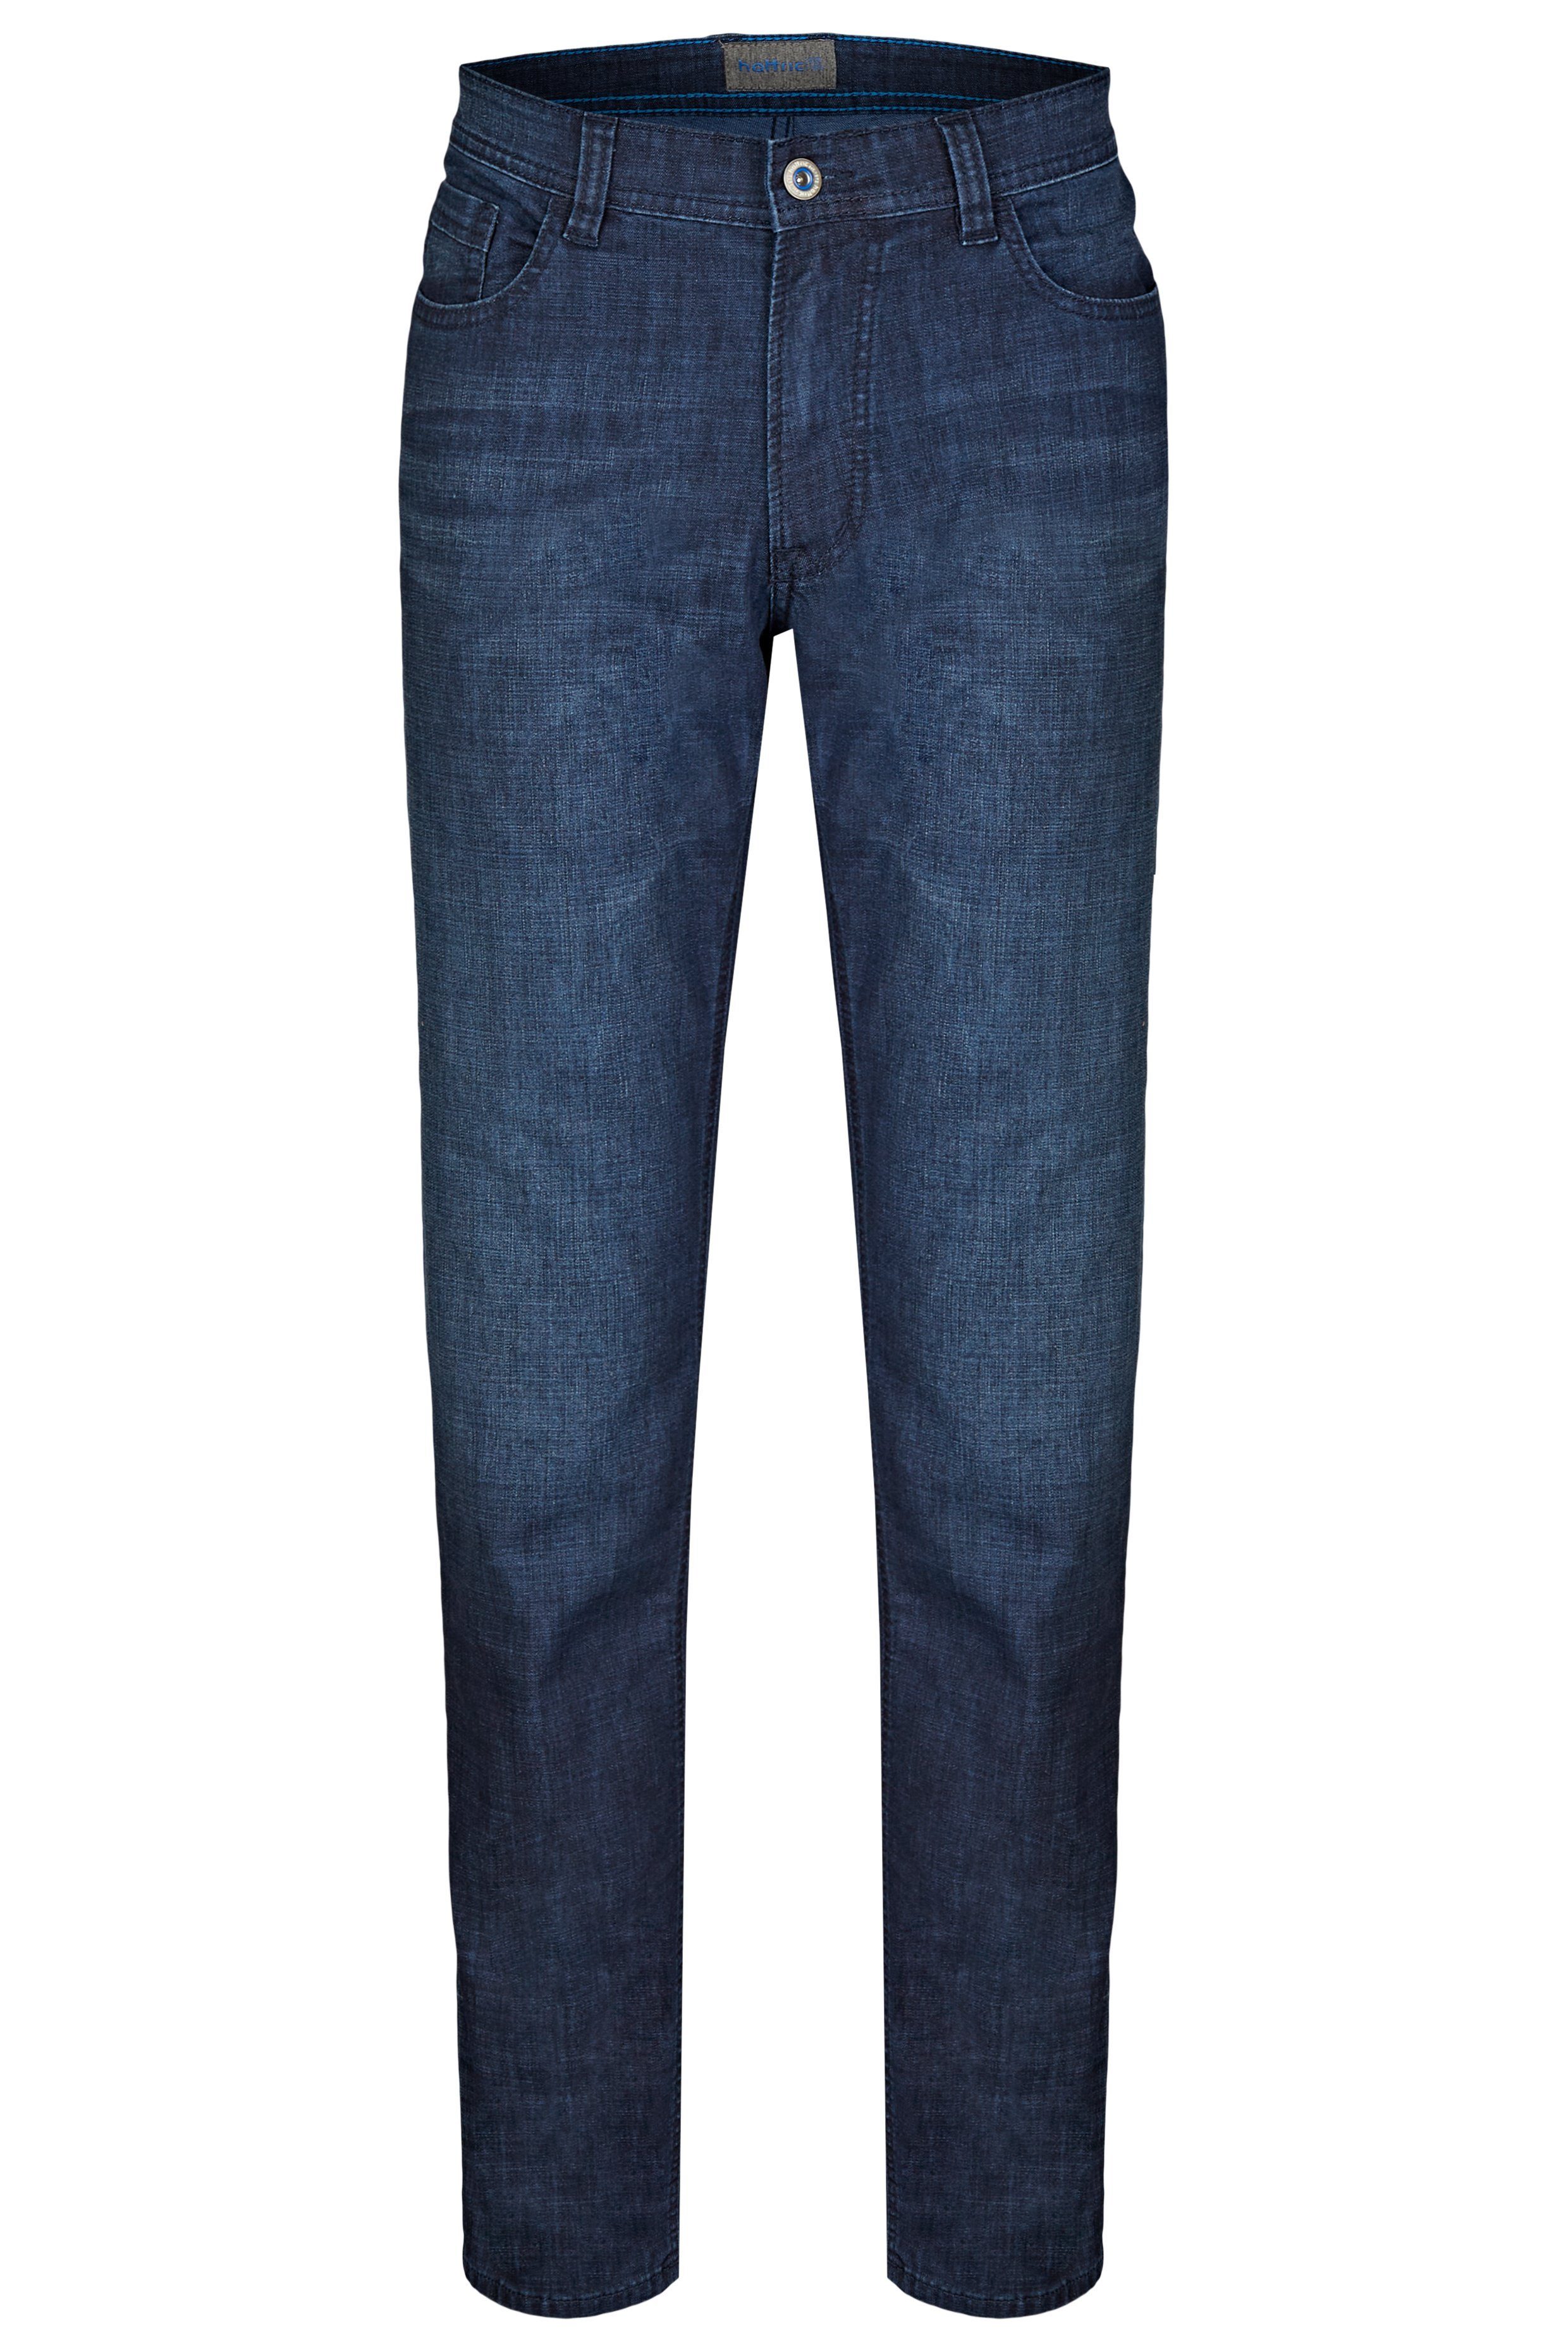 Hunter Hattric Summer dark Herren 5-Pocket-Jeans Denim 5-Pocket-Jeans indigo Hattric